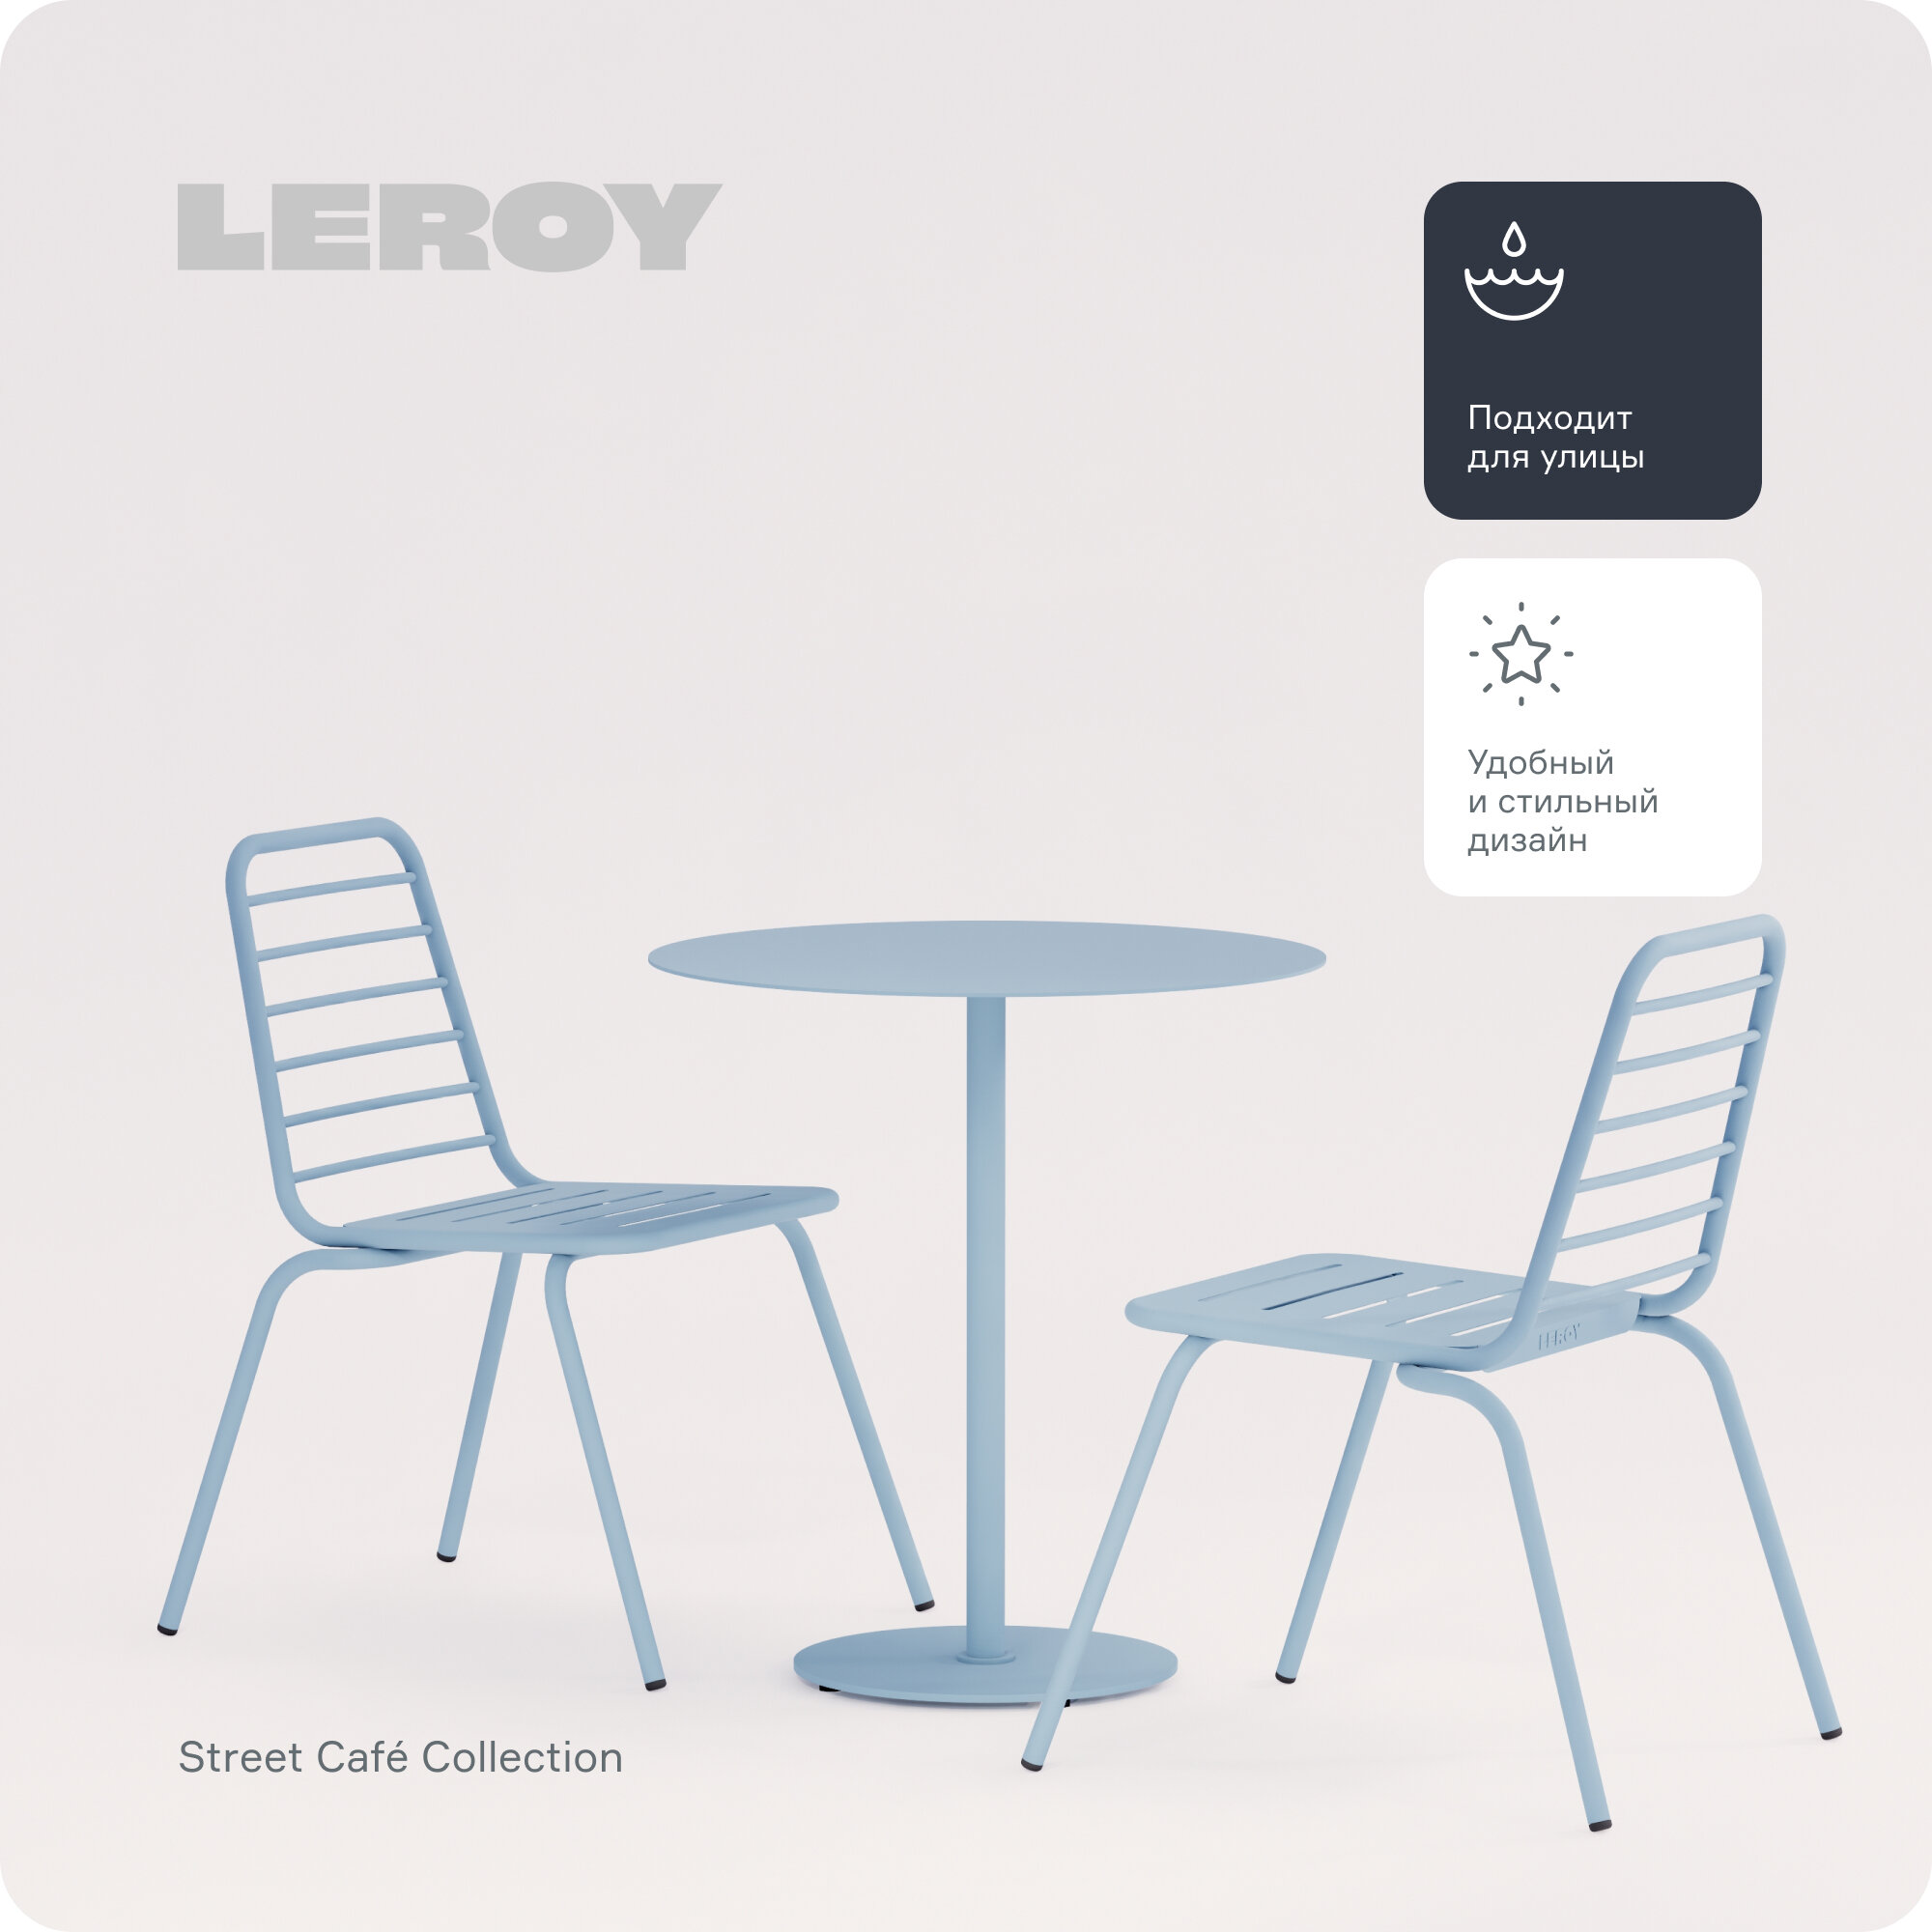 Набор обеденной мебели Street Café от бренда Leroy Design: один круглый стол и два стула, цвет: пастельно-синий